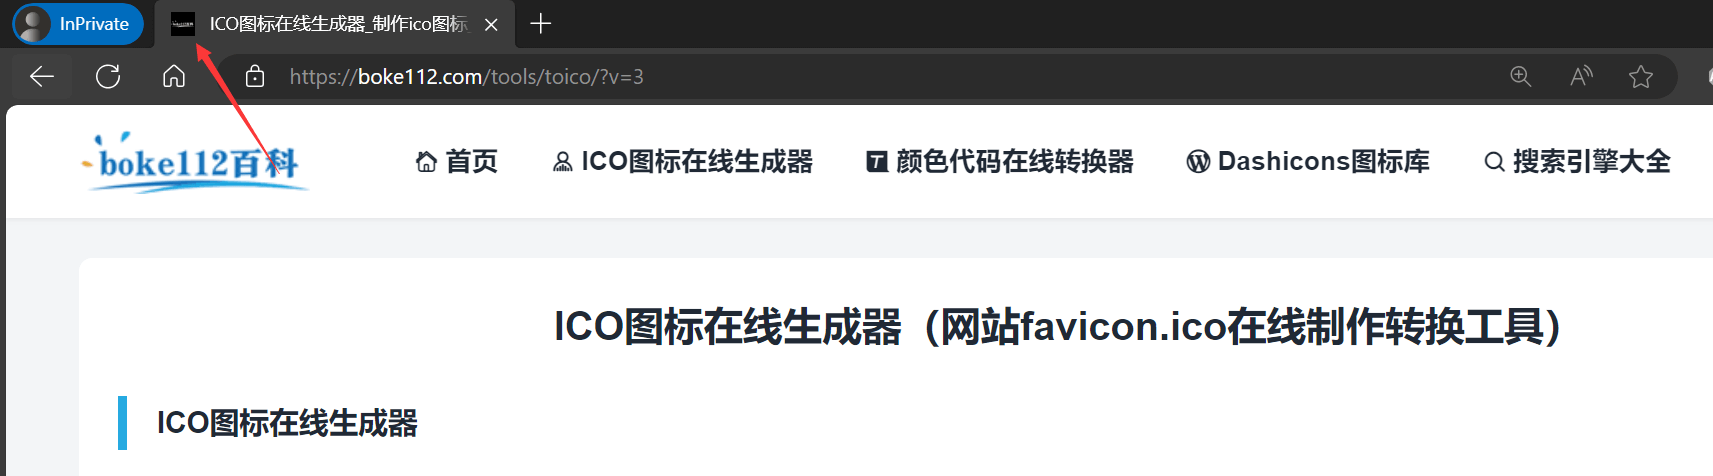 如何添加favicon.ico图标？免费在线转换ico图标 - 第1张 - 懿古今(www.yigujin.cn)